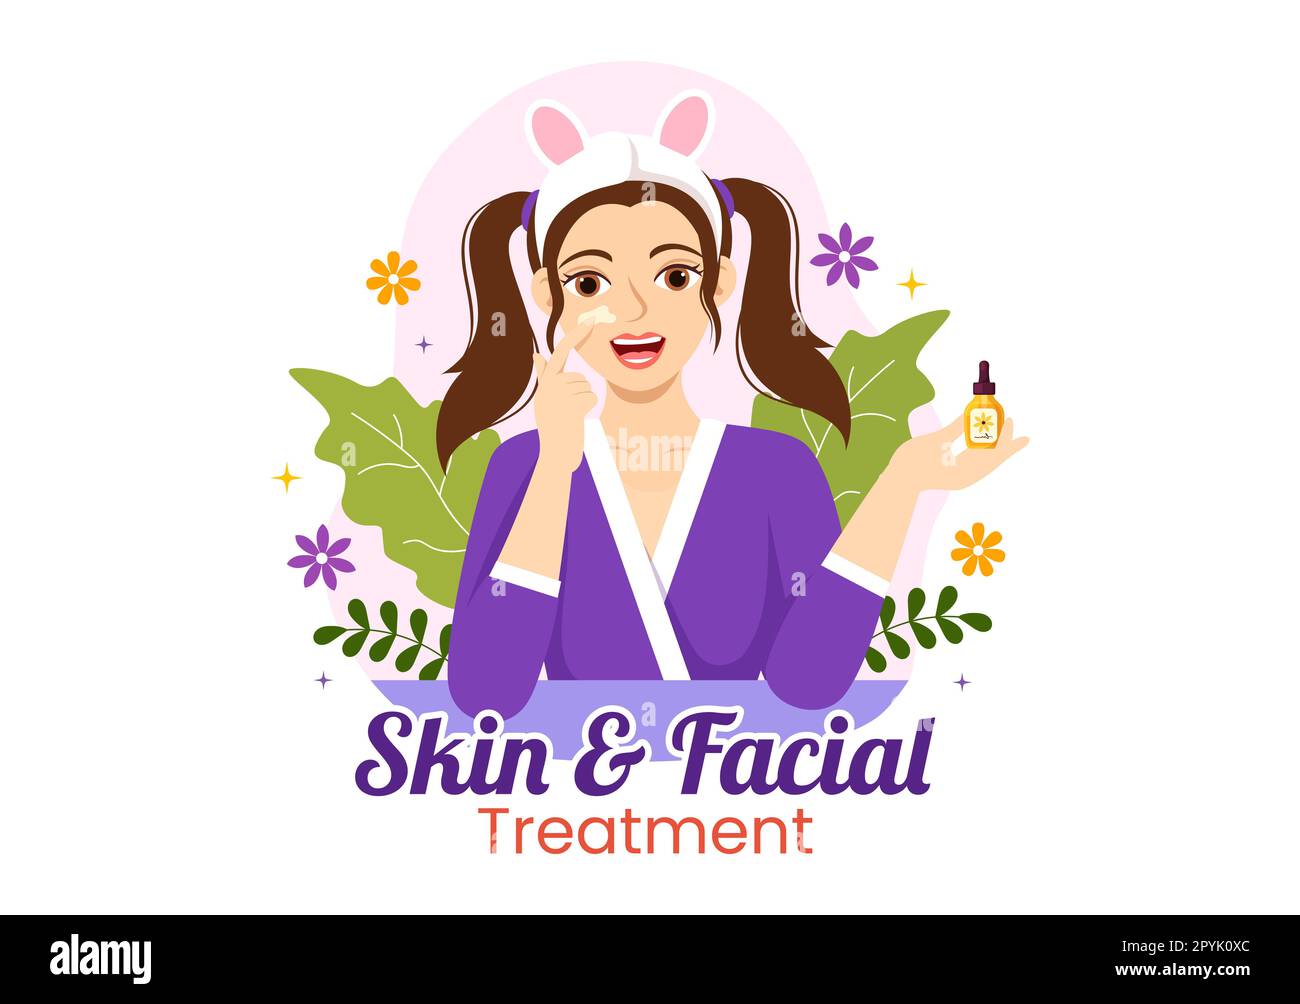 Gesichtsbehandlung und Hautbehandlung Illustration mit Hautpflege für Frauen, Anti-Alter-Maßnahmen, Massagen oder WELLNESS IN flachen, handgezeichneten Cartoon-Vorlagen Stockfoto